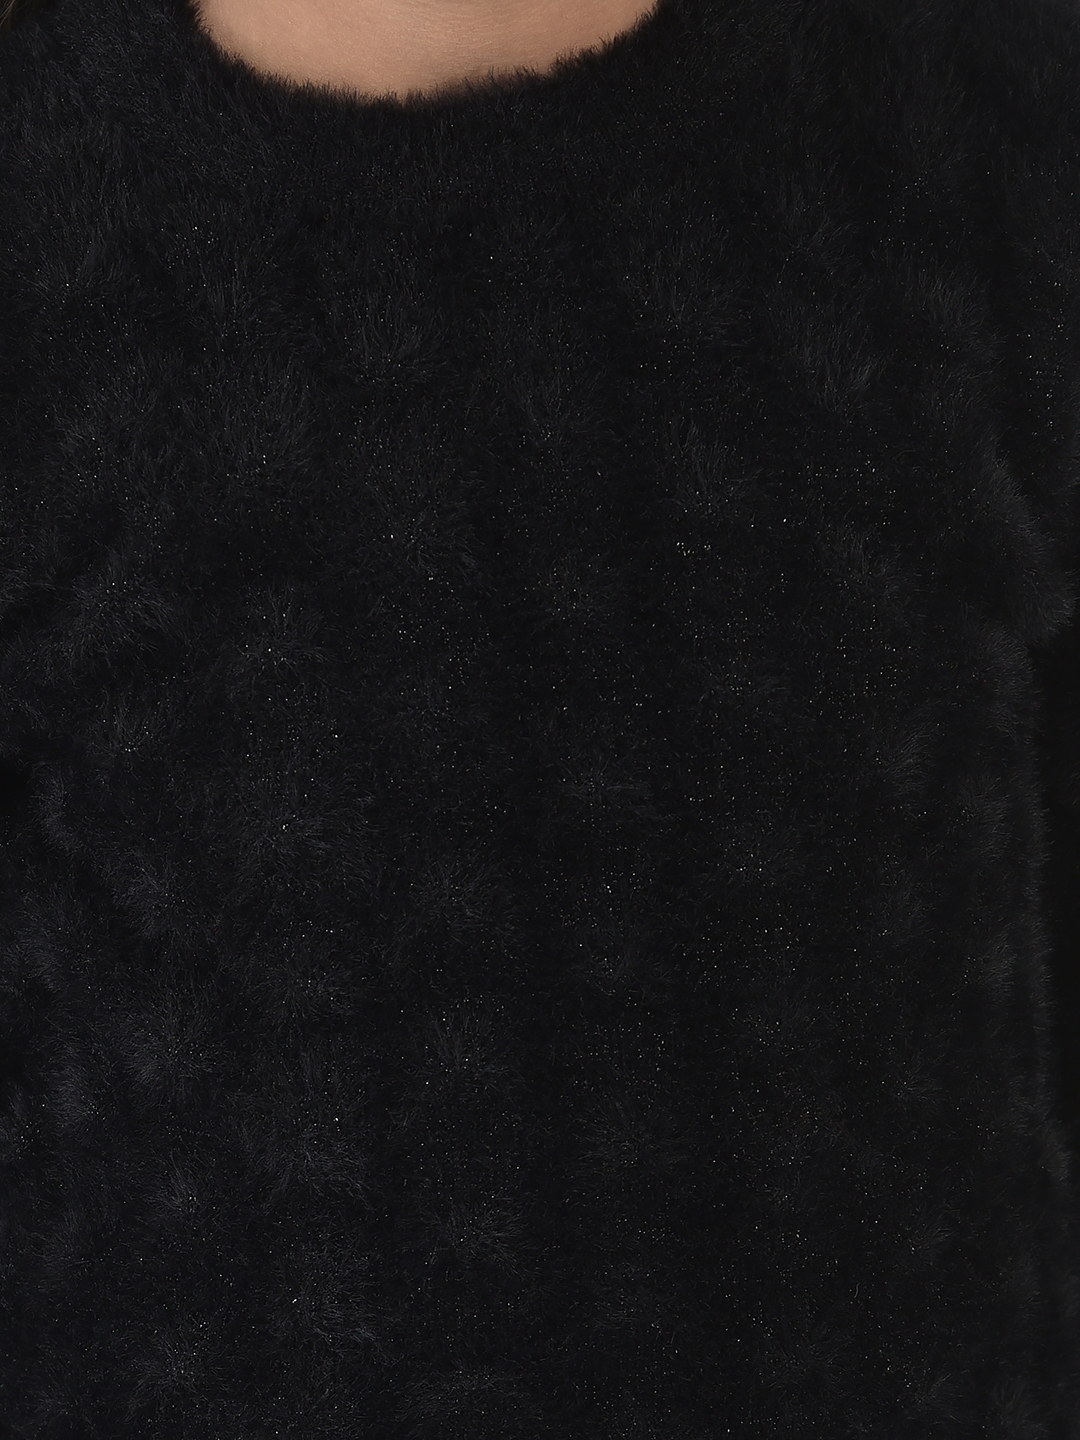 Crimsoune Club | Crimsoune Club Girls Black Sweater in Self-Designed Print 5